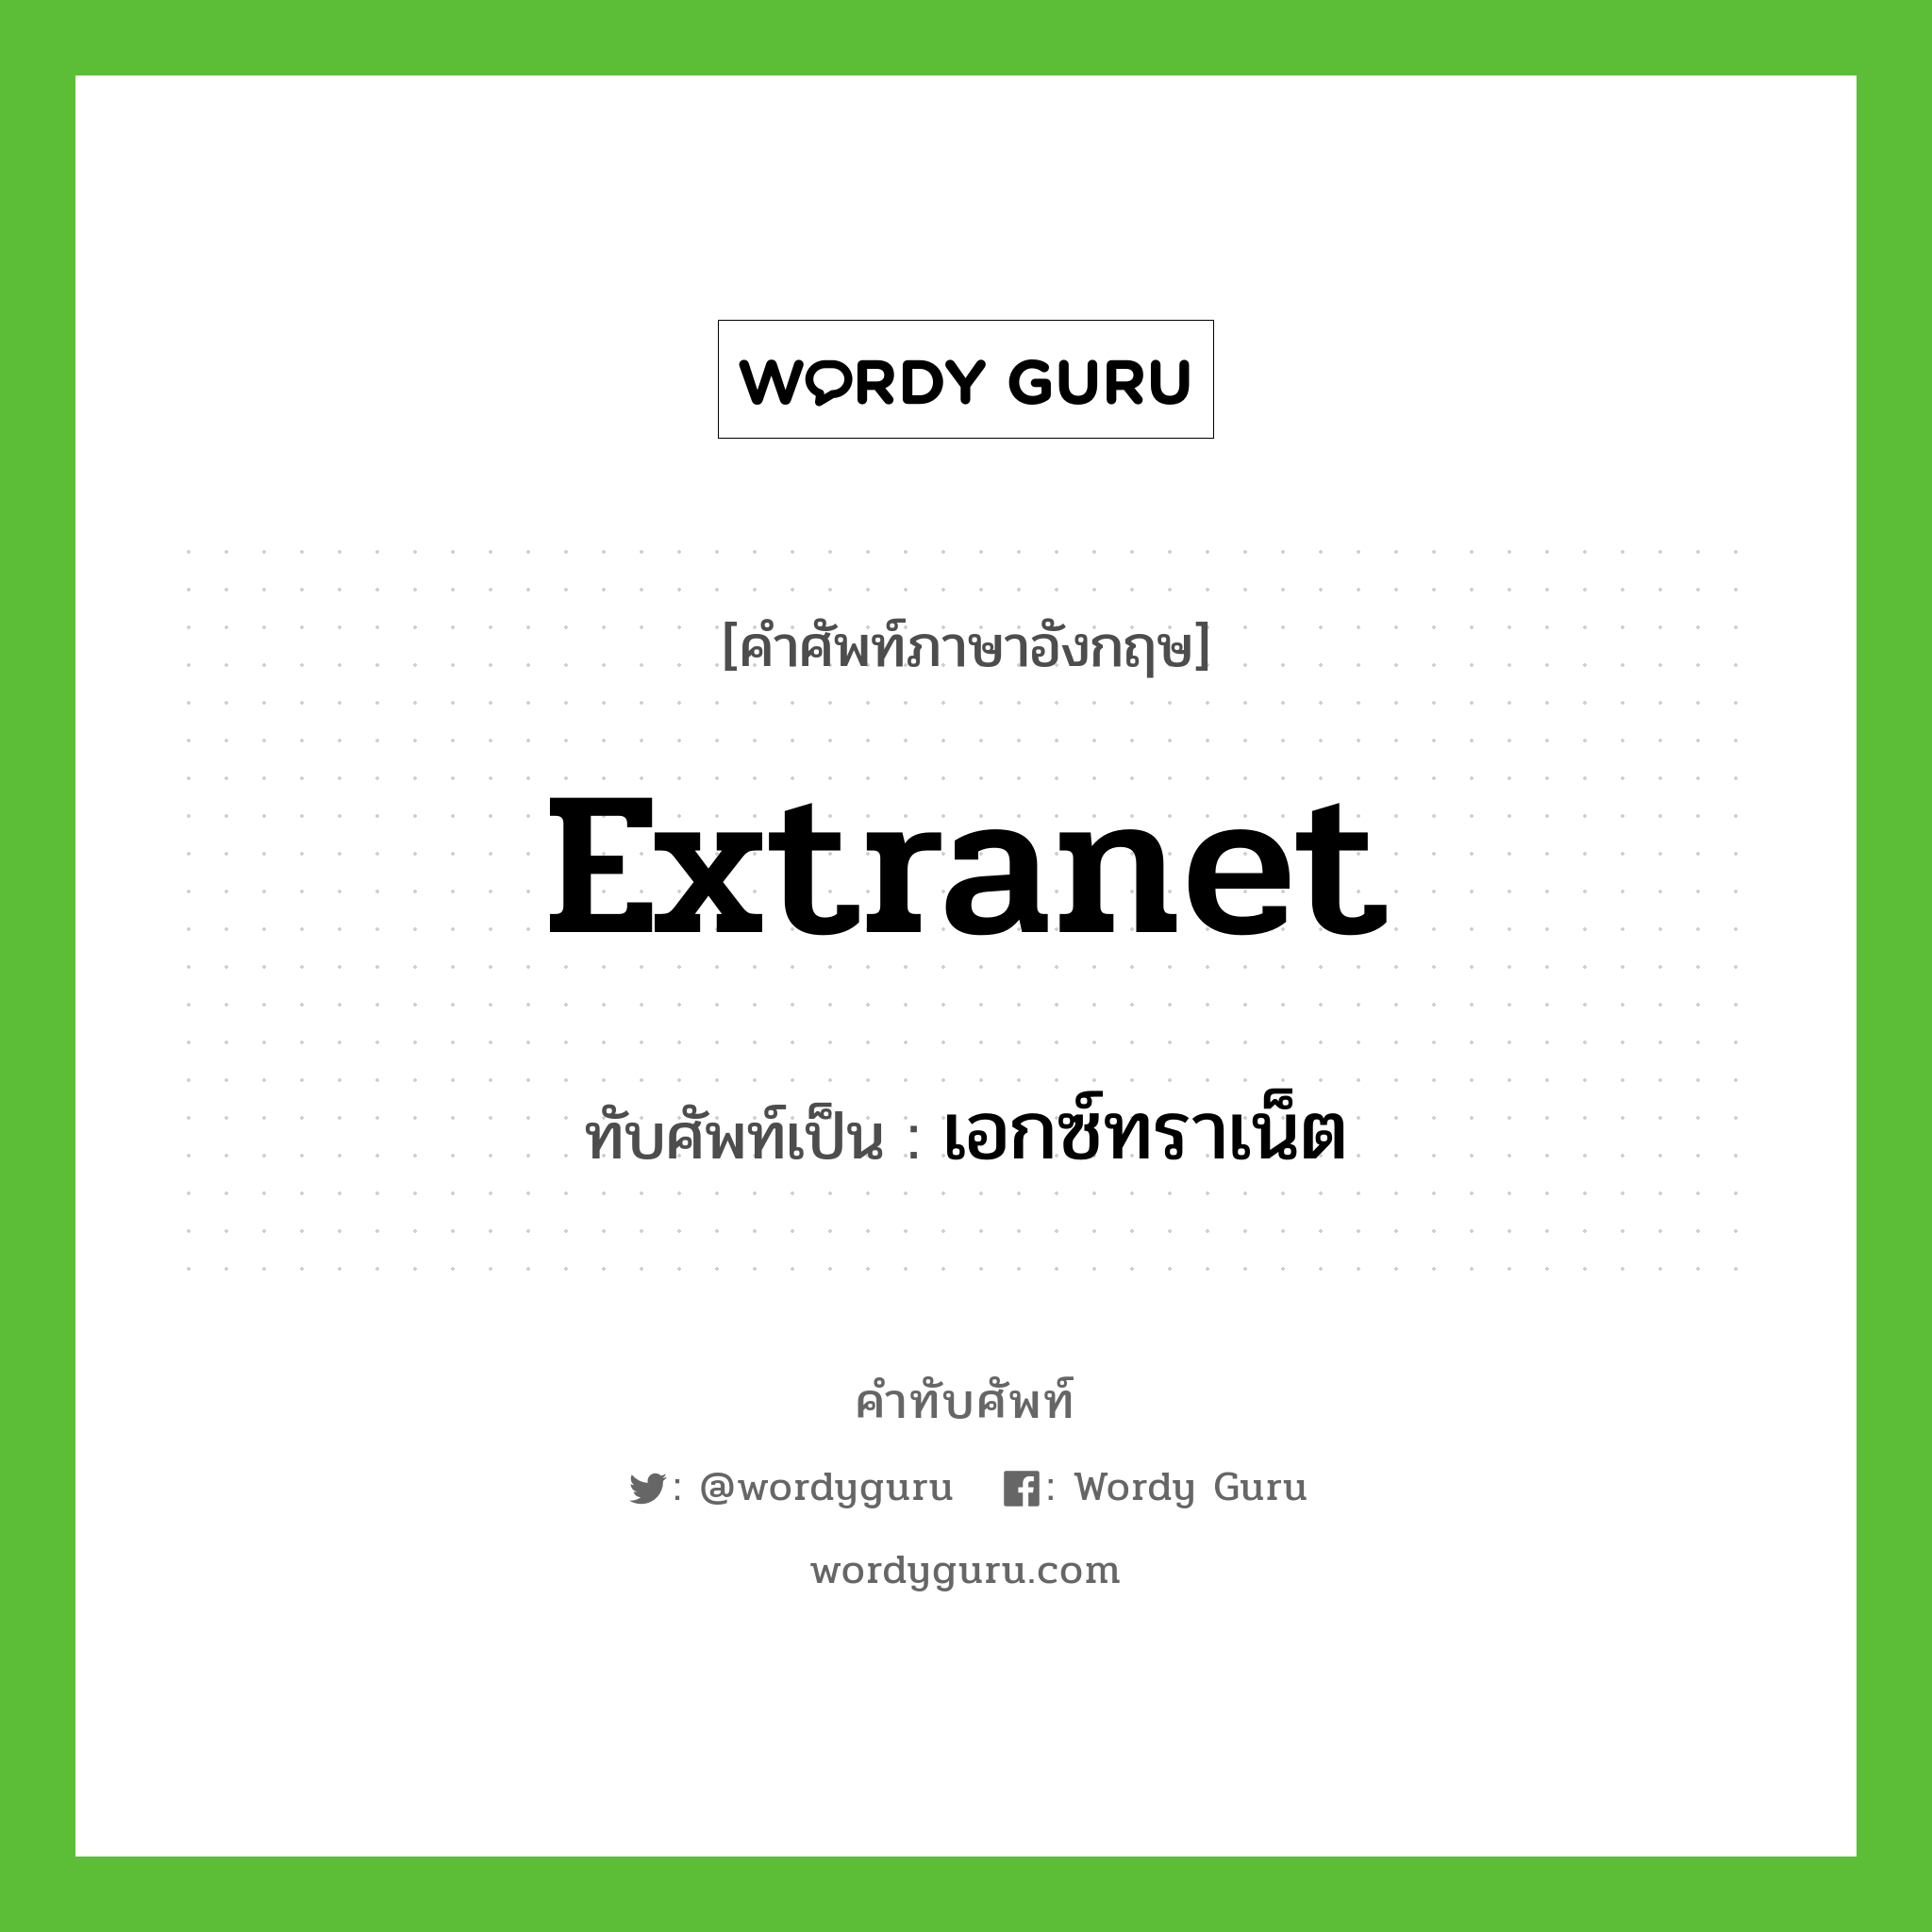 extranet เขียนเป็นคำไทยว่าอะไร?, คำศัพท์ภาษาอังกฤษ extranet ทับศัพท์เป็น เอกซ์ทราเน็ต